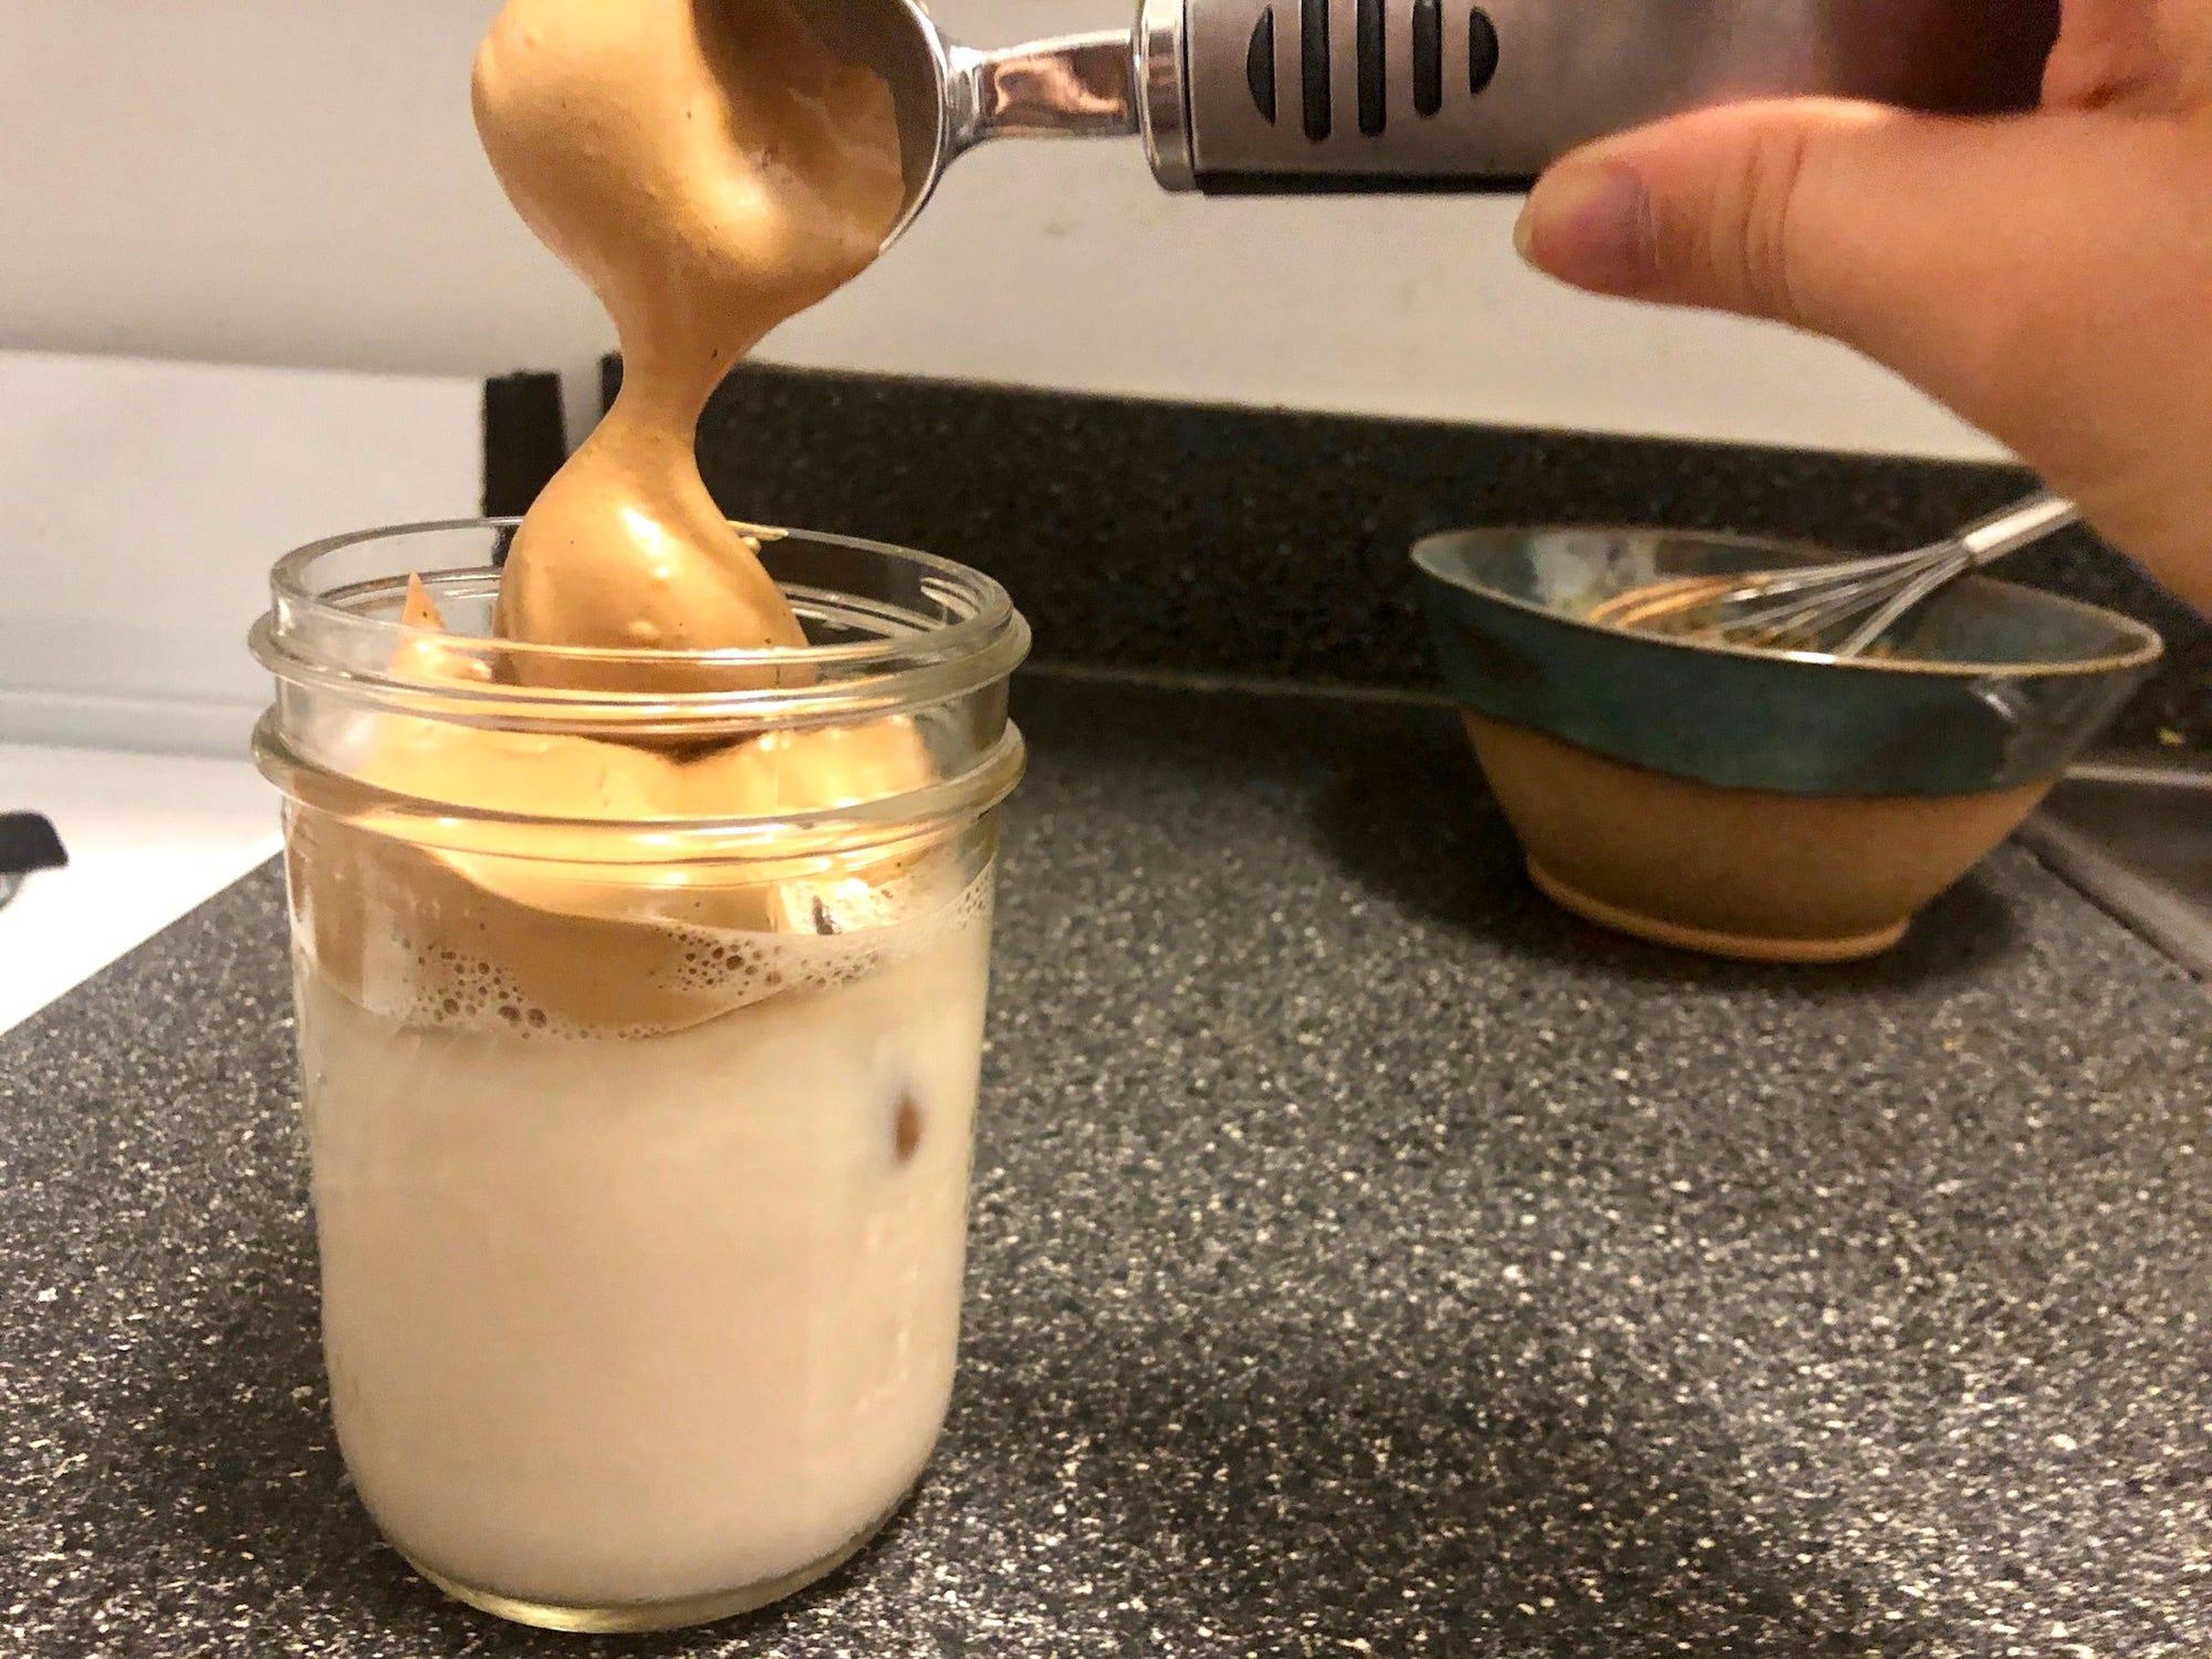 Utilicé una bola de helado para poner la mezcla de dalgona encima de la leche.